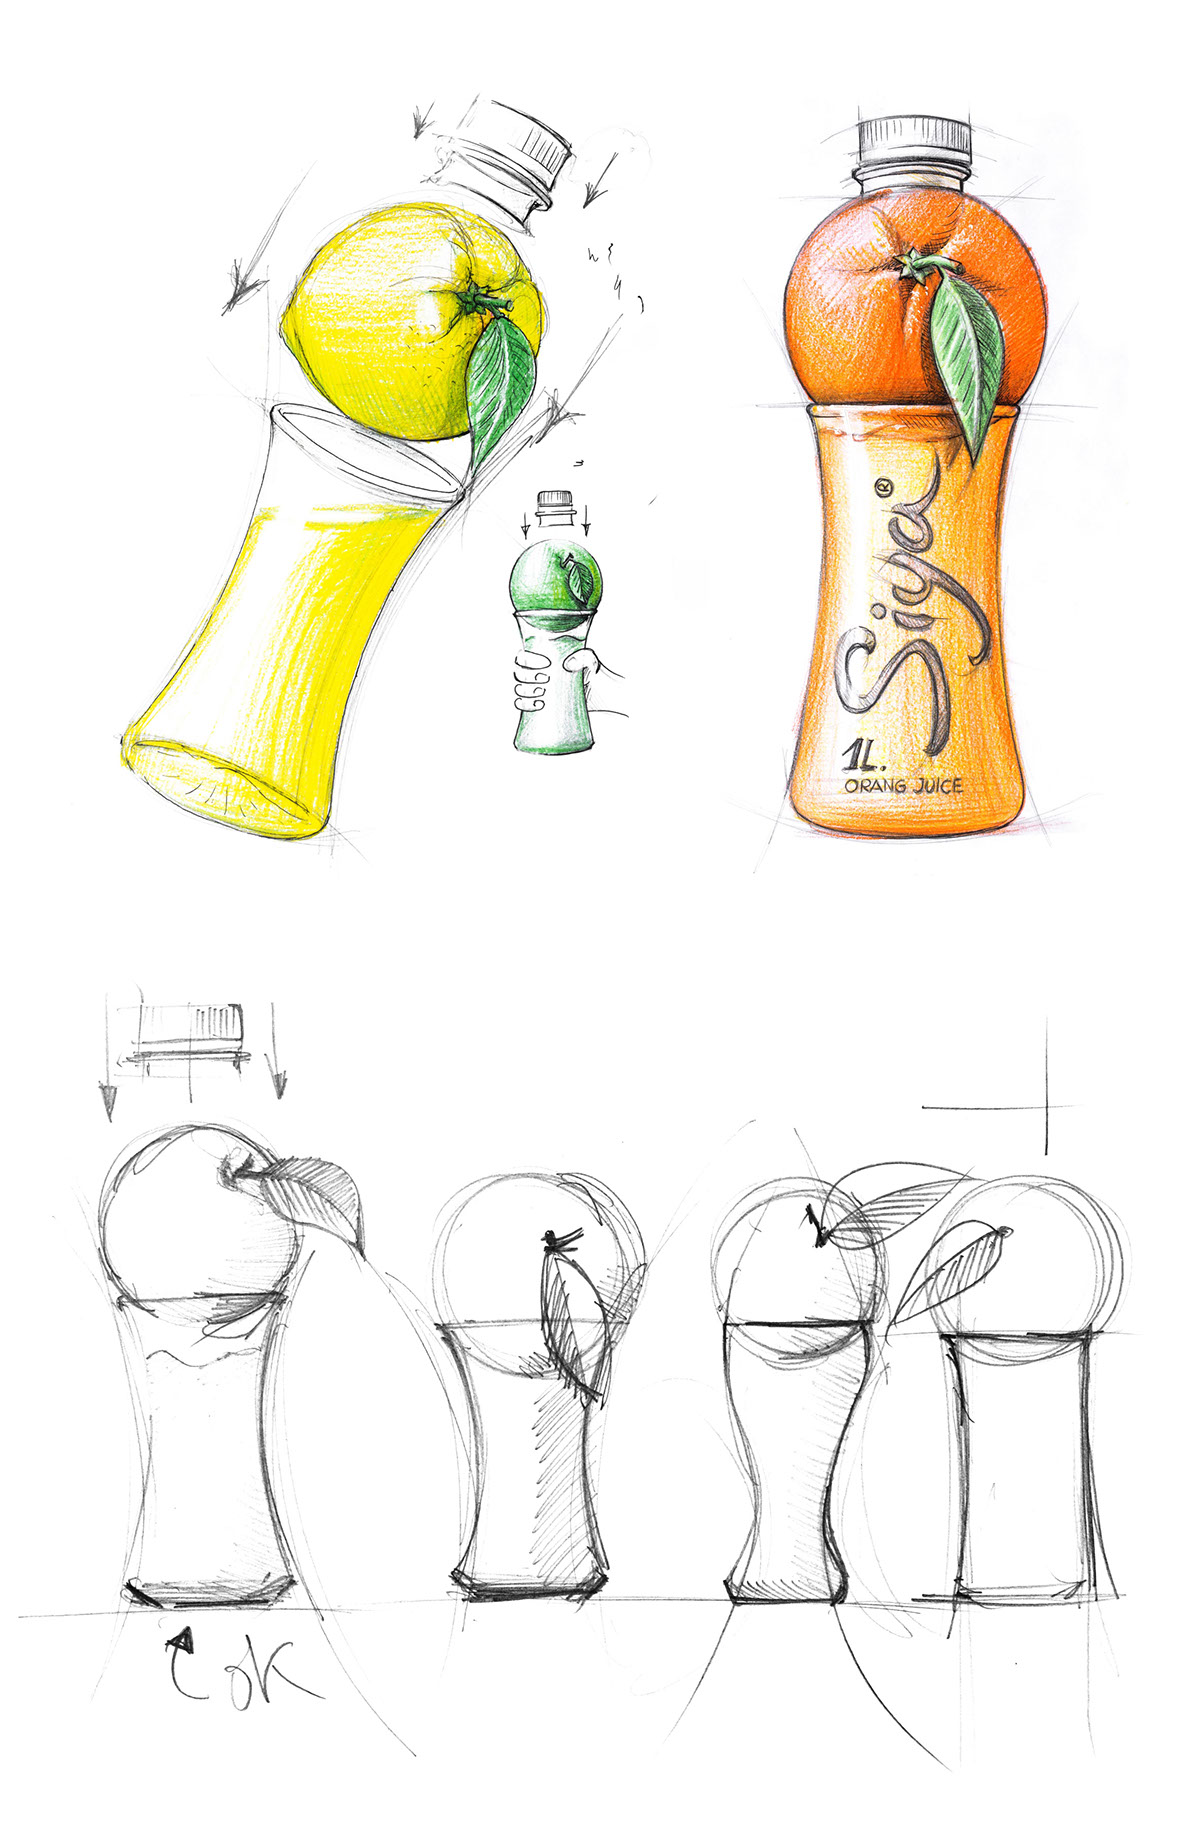 siya果汁系列创意包装欣赏,喝完舍不得扔的饮料瓶!